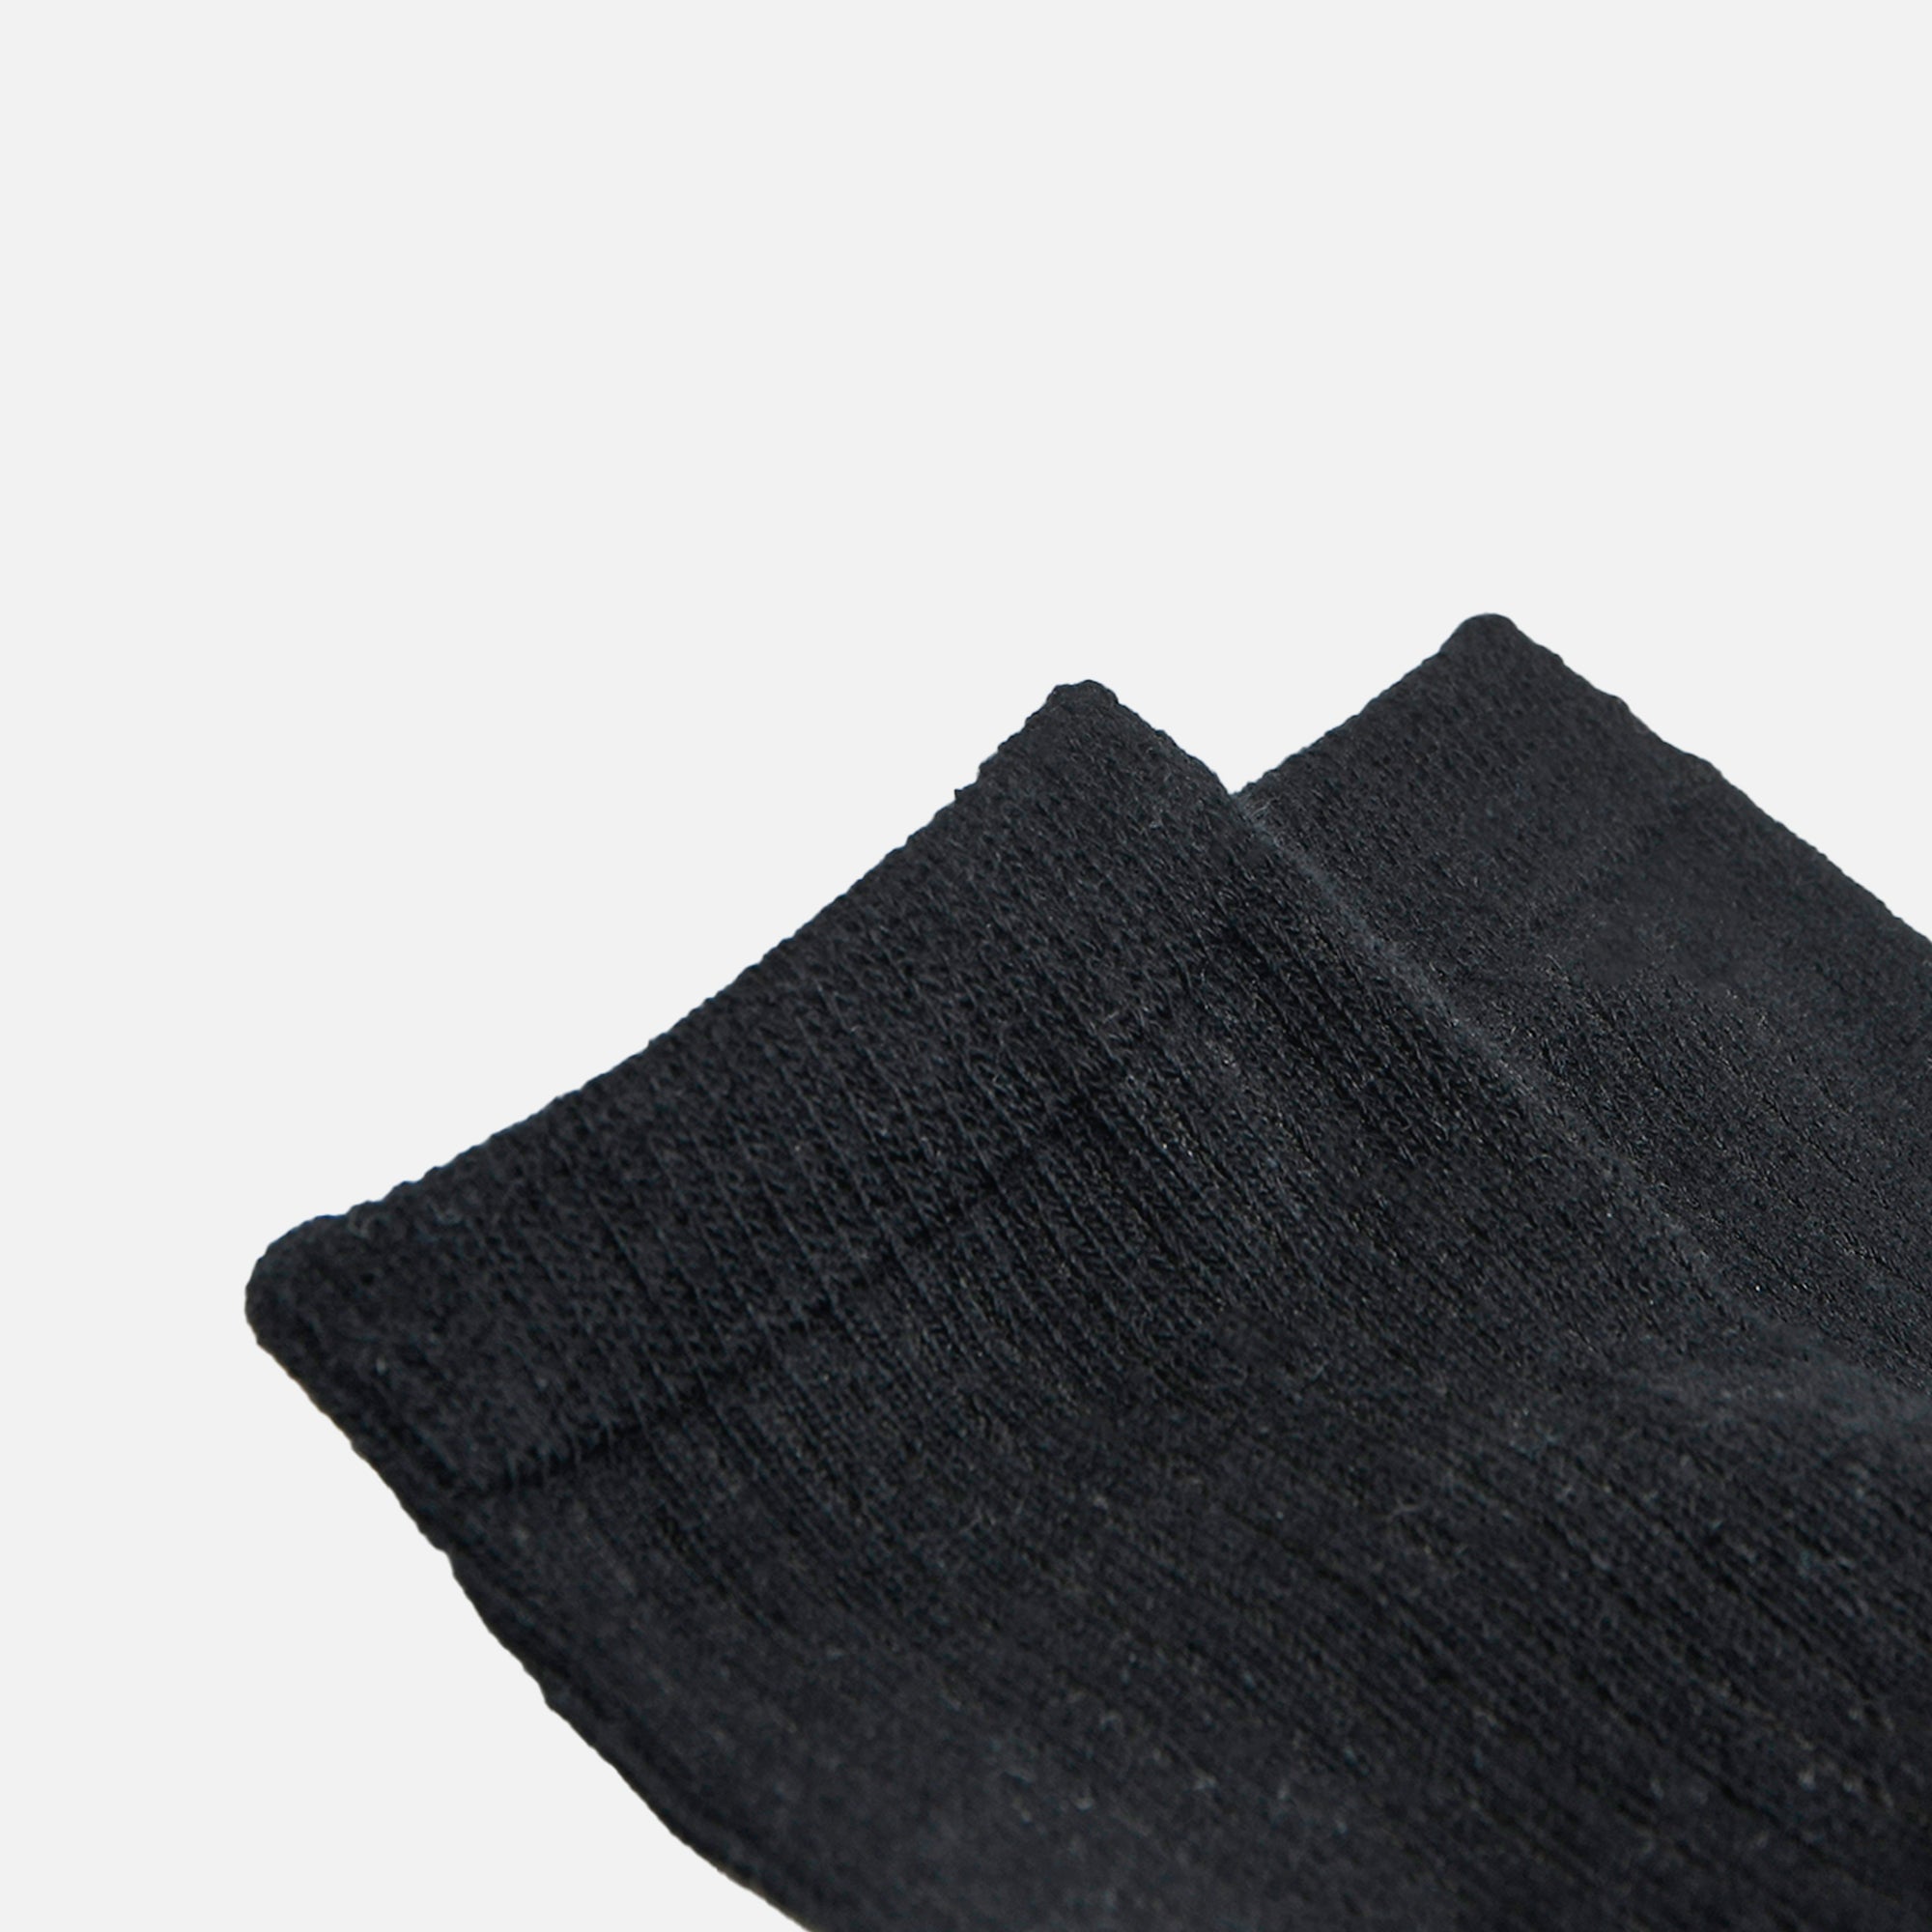 Plain black socks for children